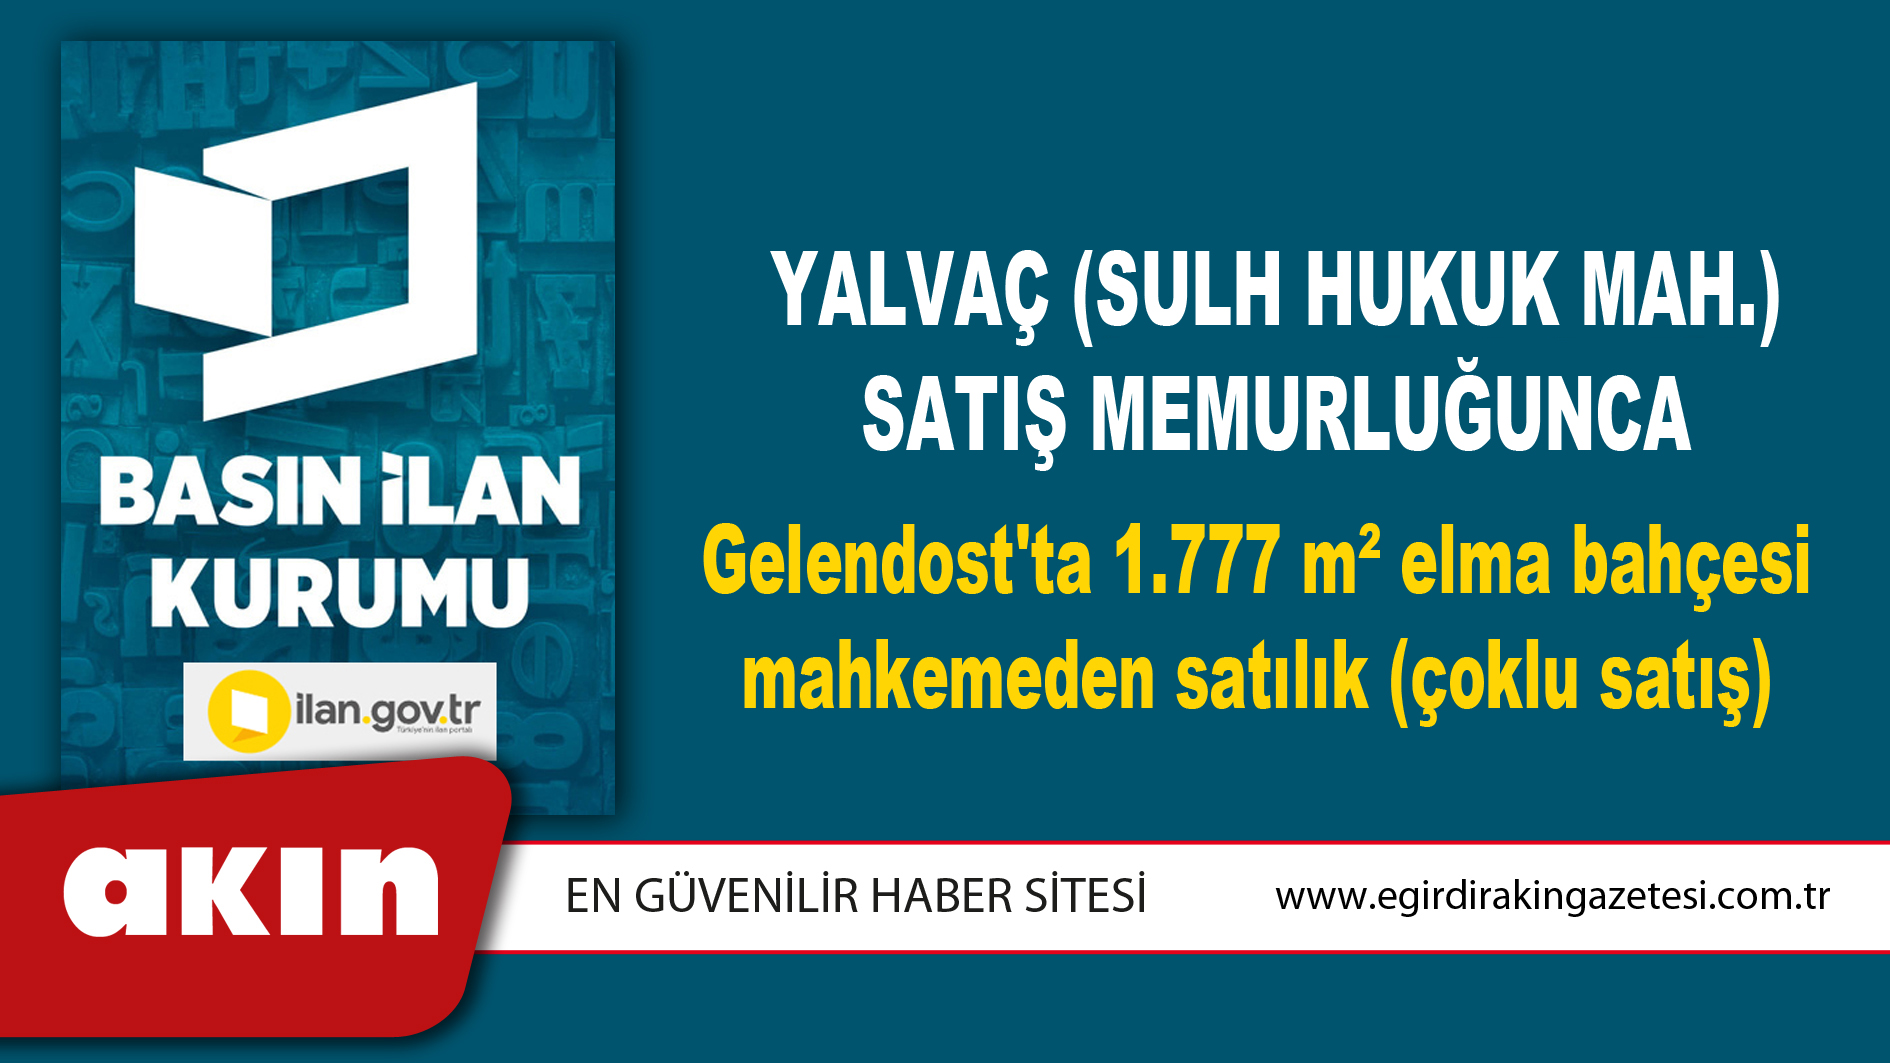 Yalvaç (Sulh Hukuk Mah.) Satış Memurluğunca Gelendost'ta 1.777 m² elma bahçesi mahkemeden satılık (çoklu satış)